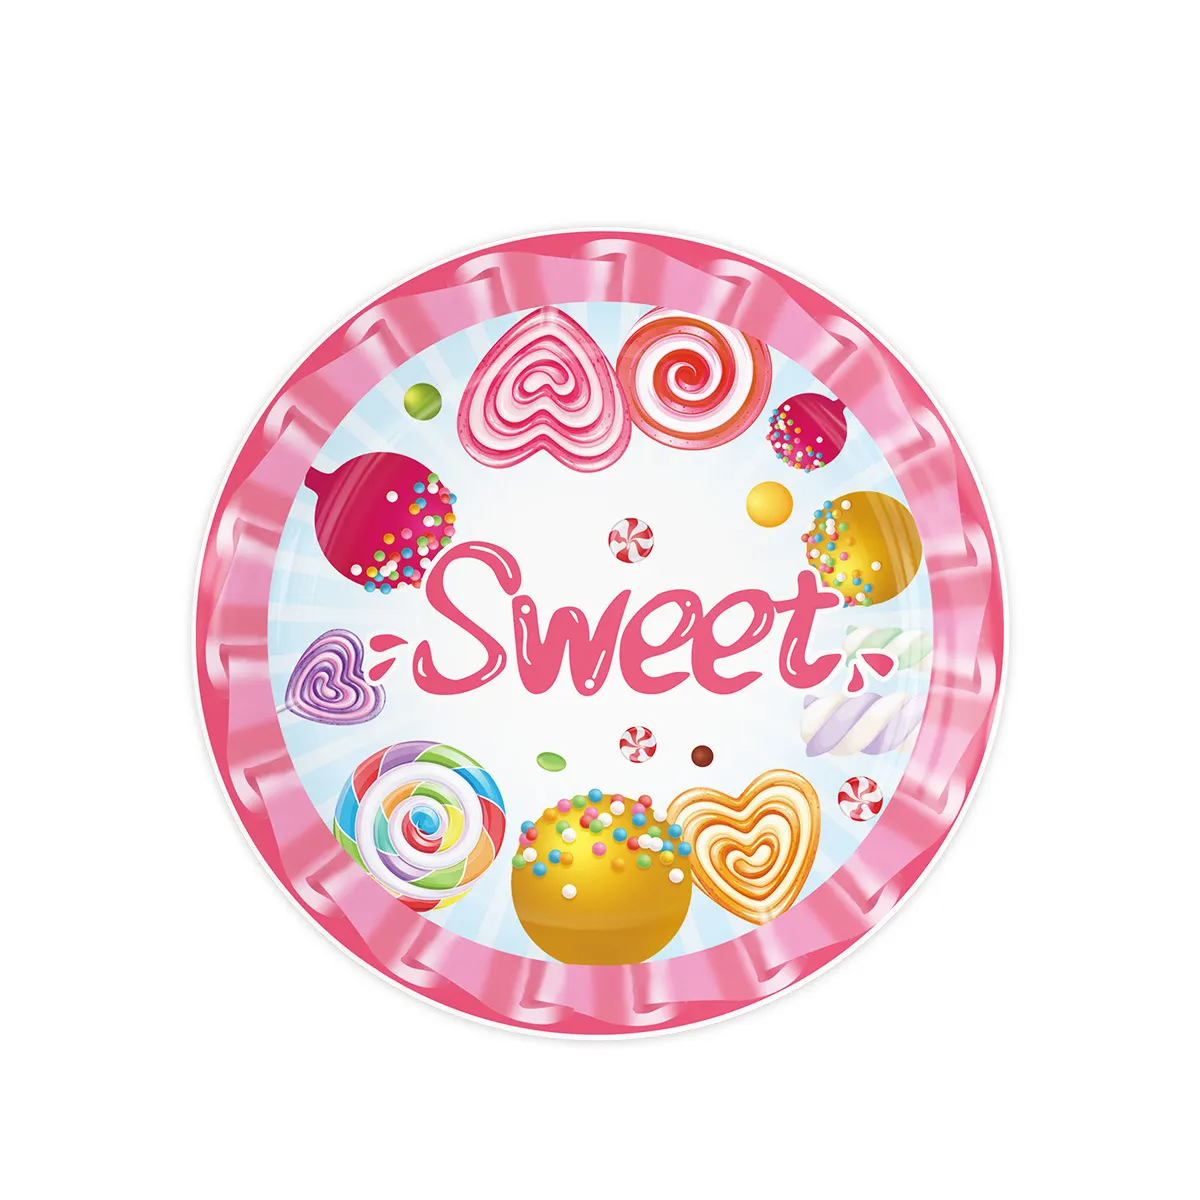 Venta caliente Pink Candy pop cumpleaños tema Fiesta suministros decoraciones desechable tablewale conjunto para niños